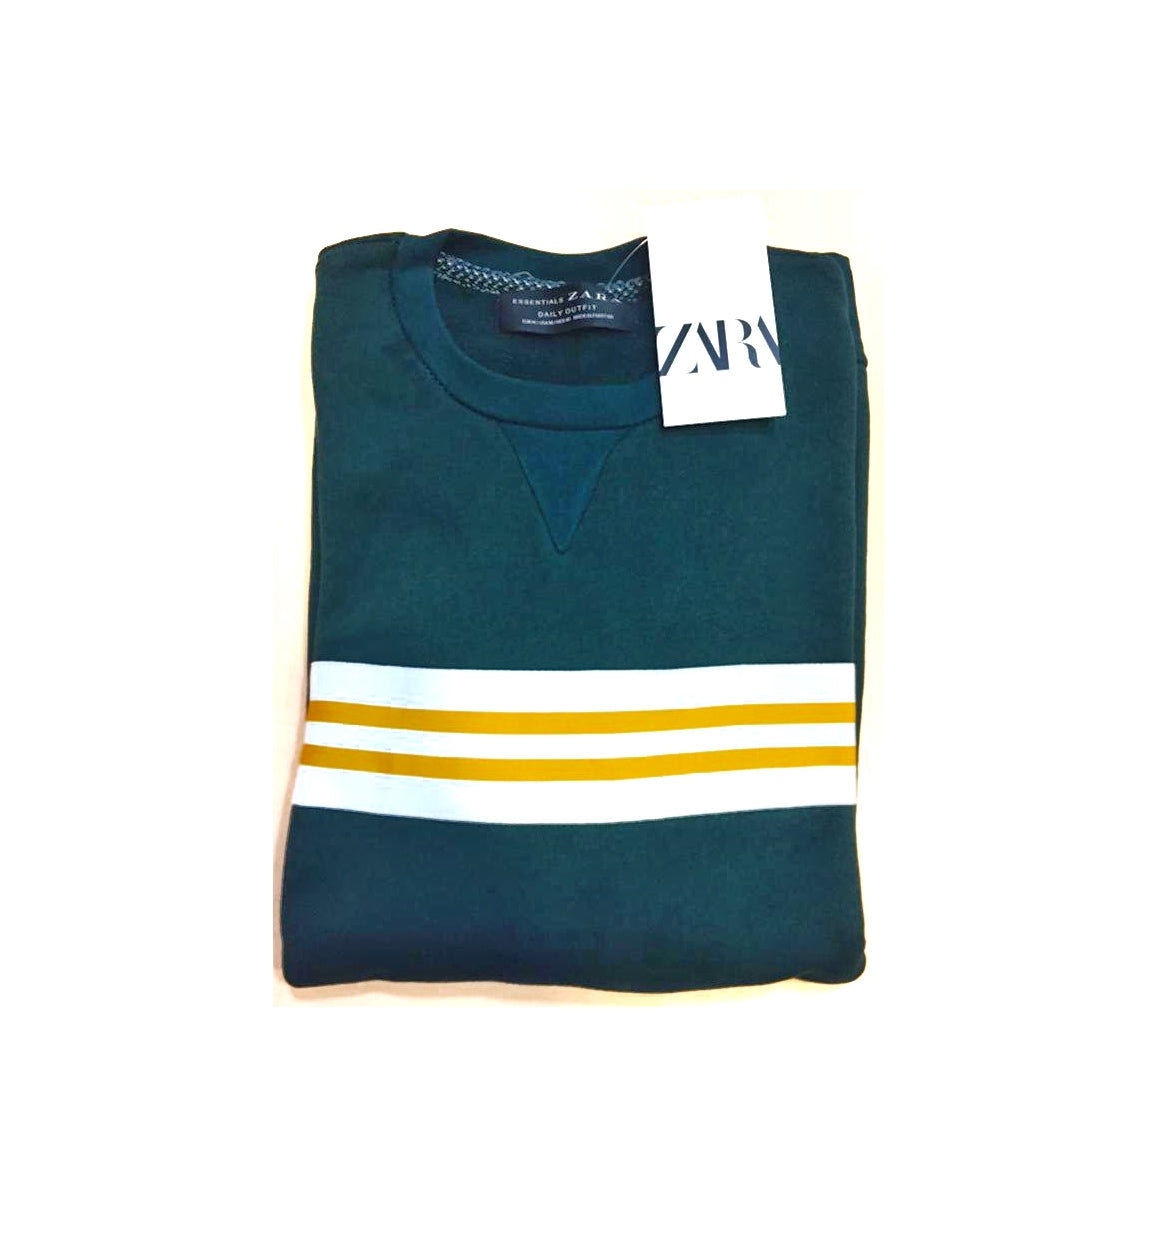 ZR Premium Cotton Terry Sweatshirt – Green With Yellow & White Stripes